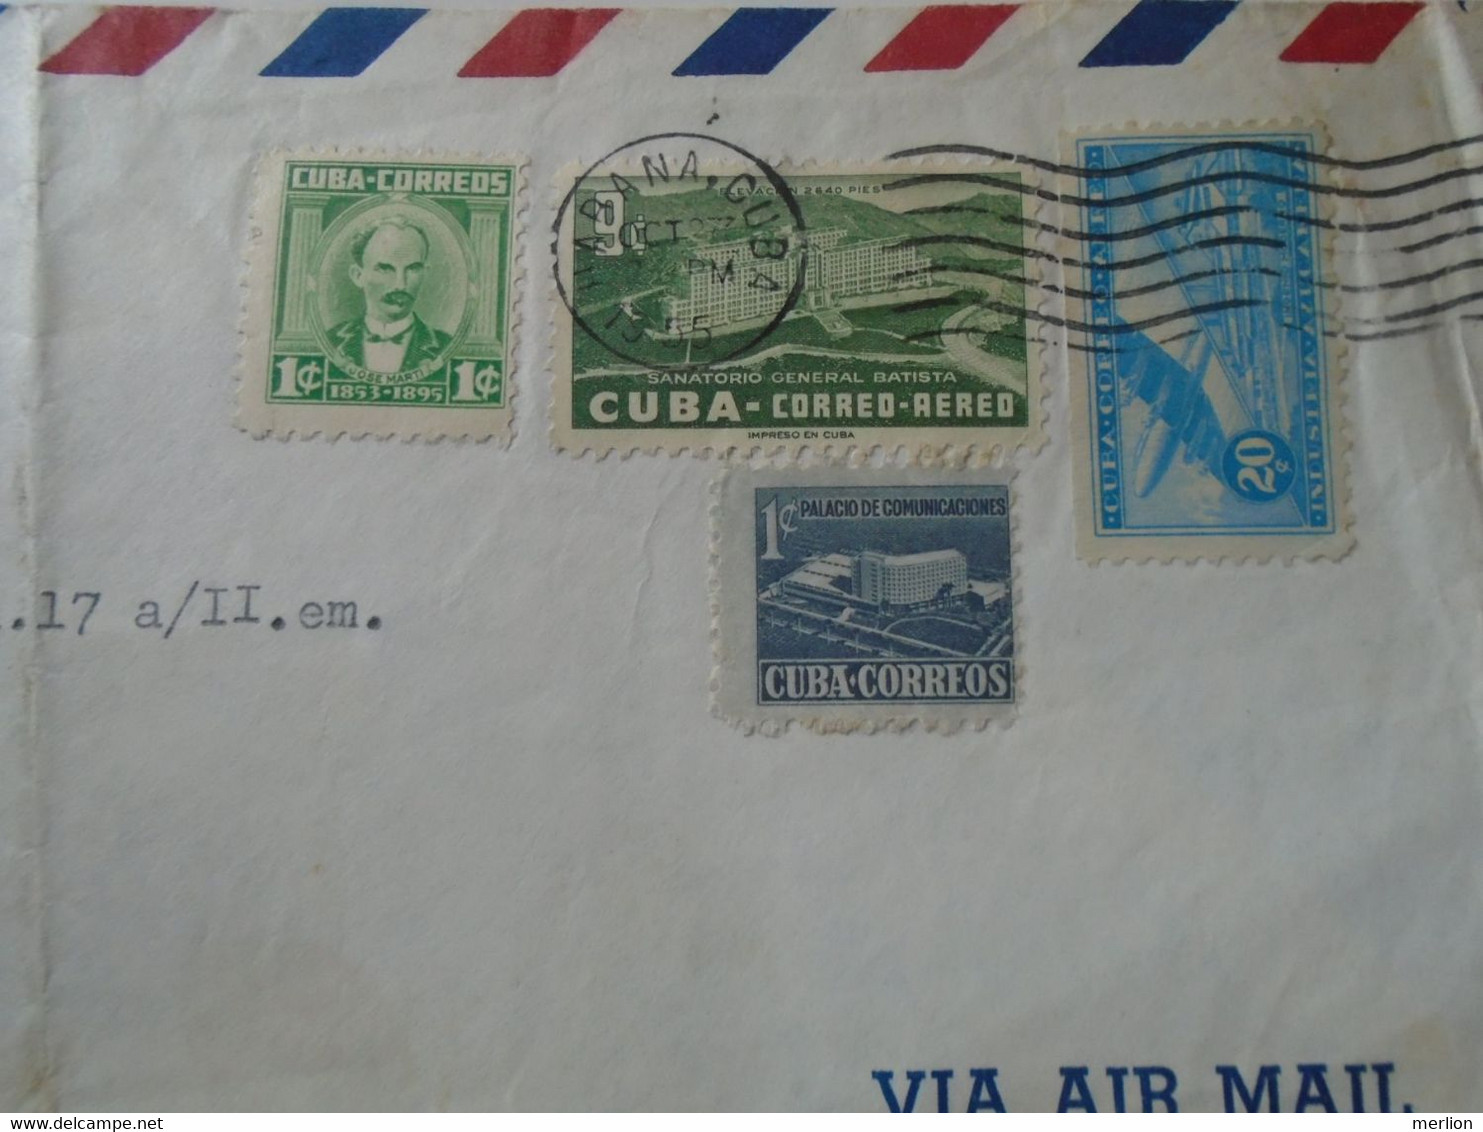 ZA399.16    CUBA   Airmail Cover -  Cancel 1955  Hotel AZUL,  Habana  Livia Ronay    Sent To Hungary - Lettres & Documents